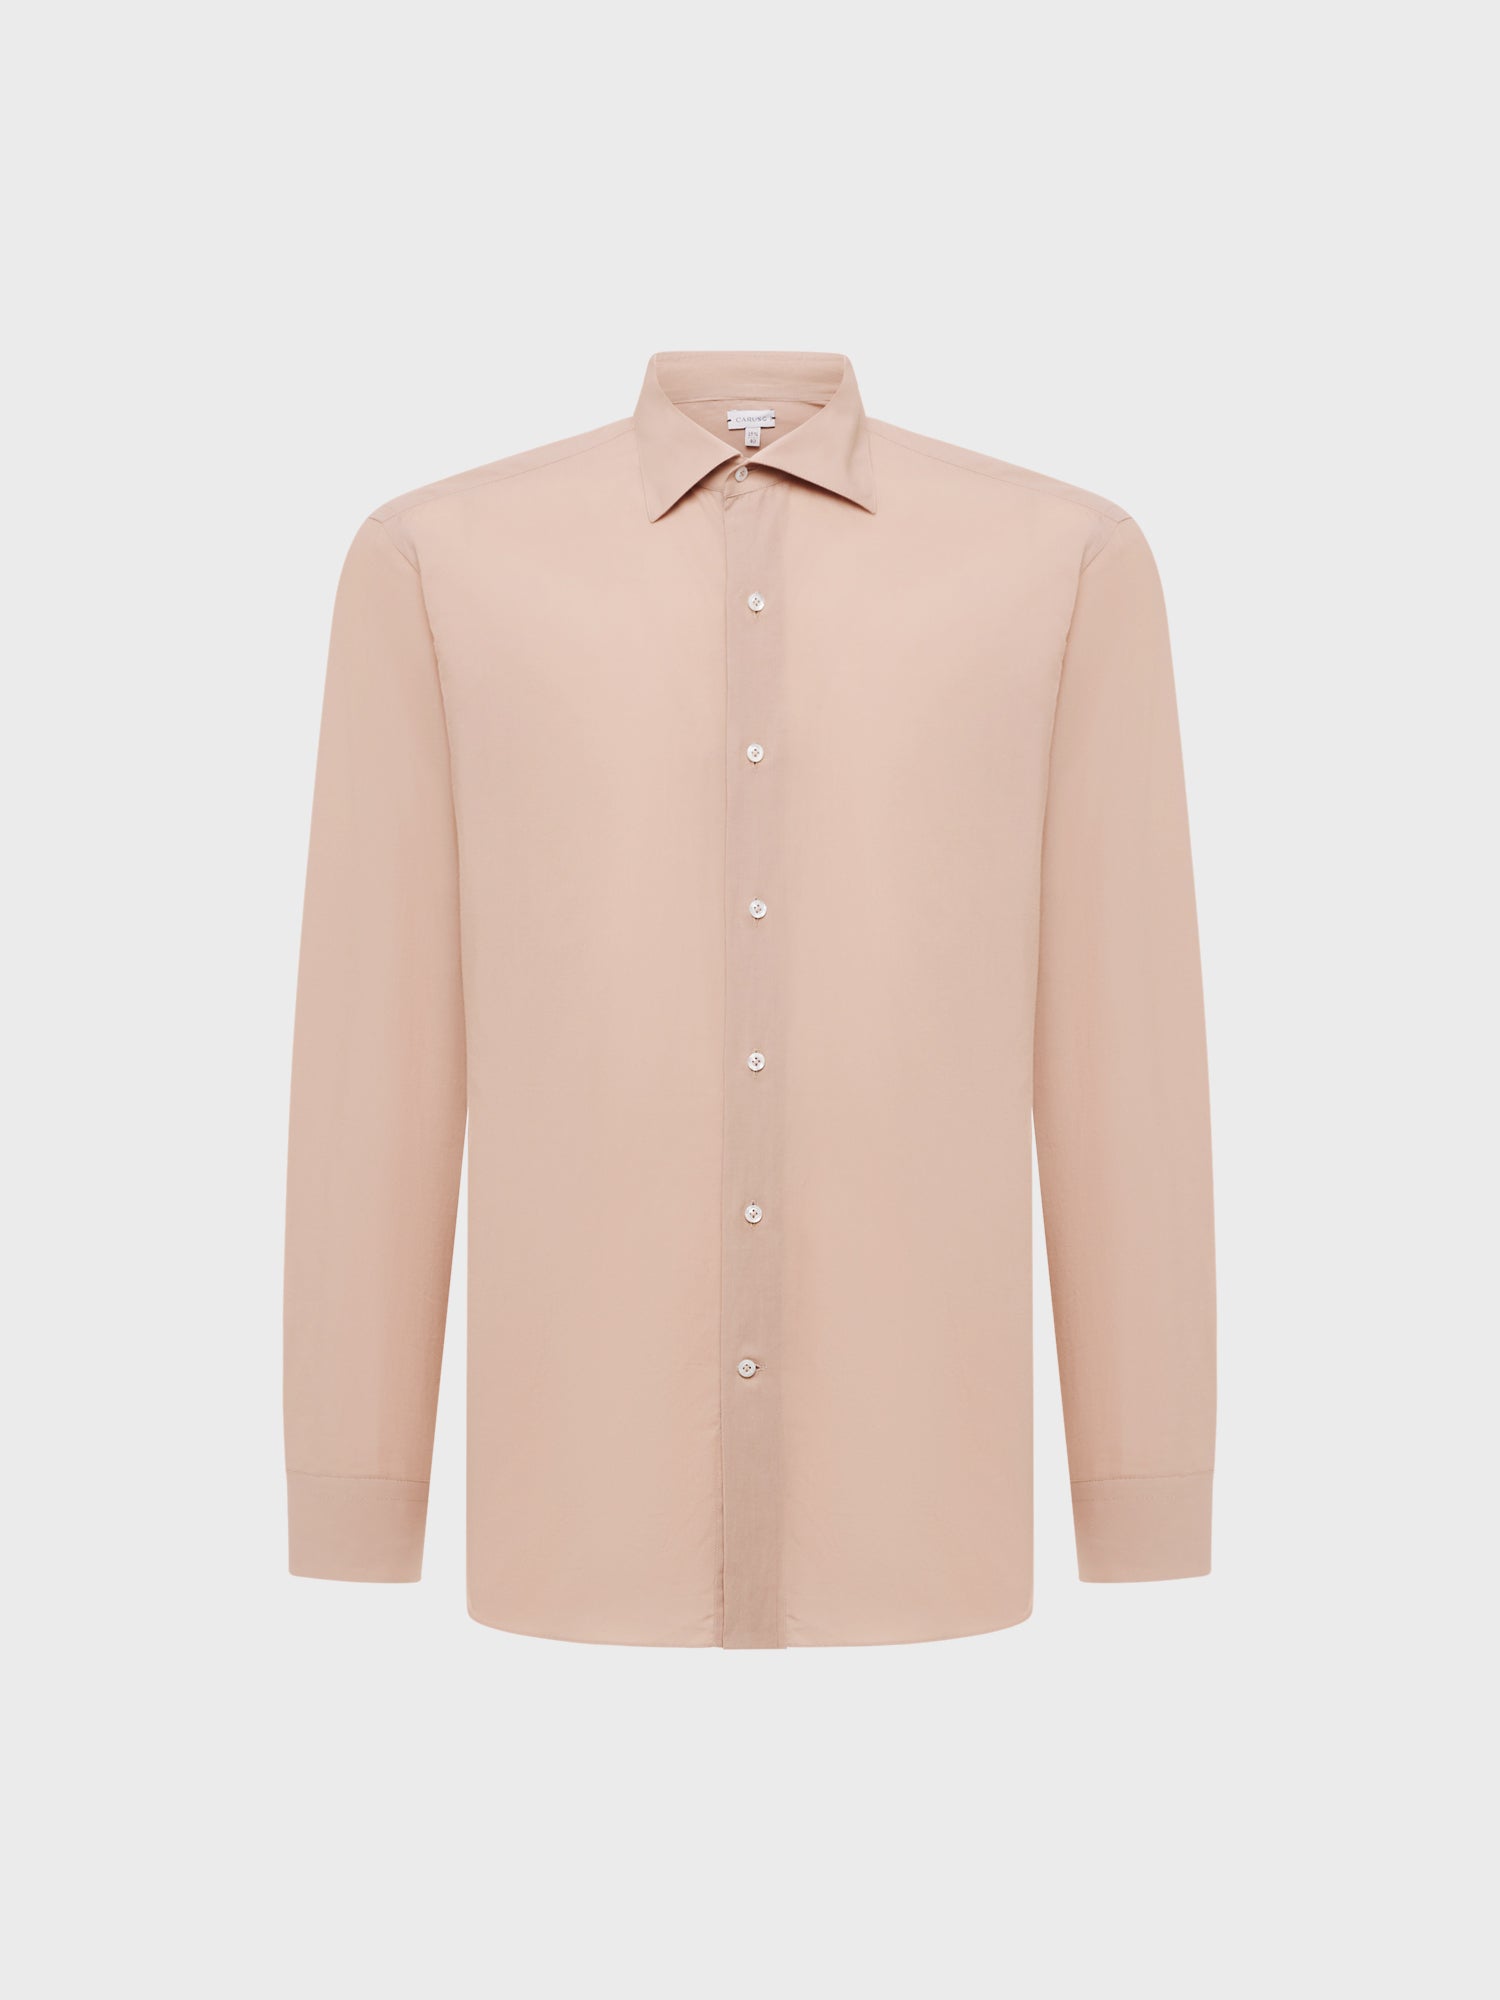 Caruso Menswear Abbigliamento Uomo Camicia slim fit in cotone rosa antico still